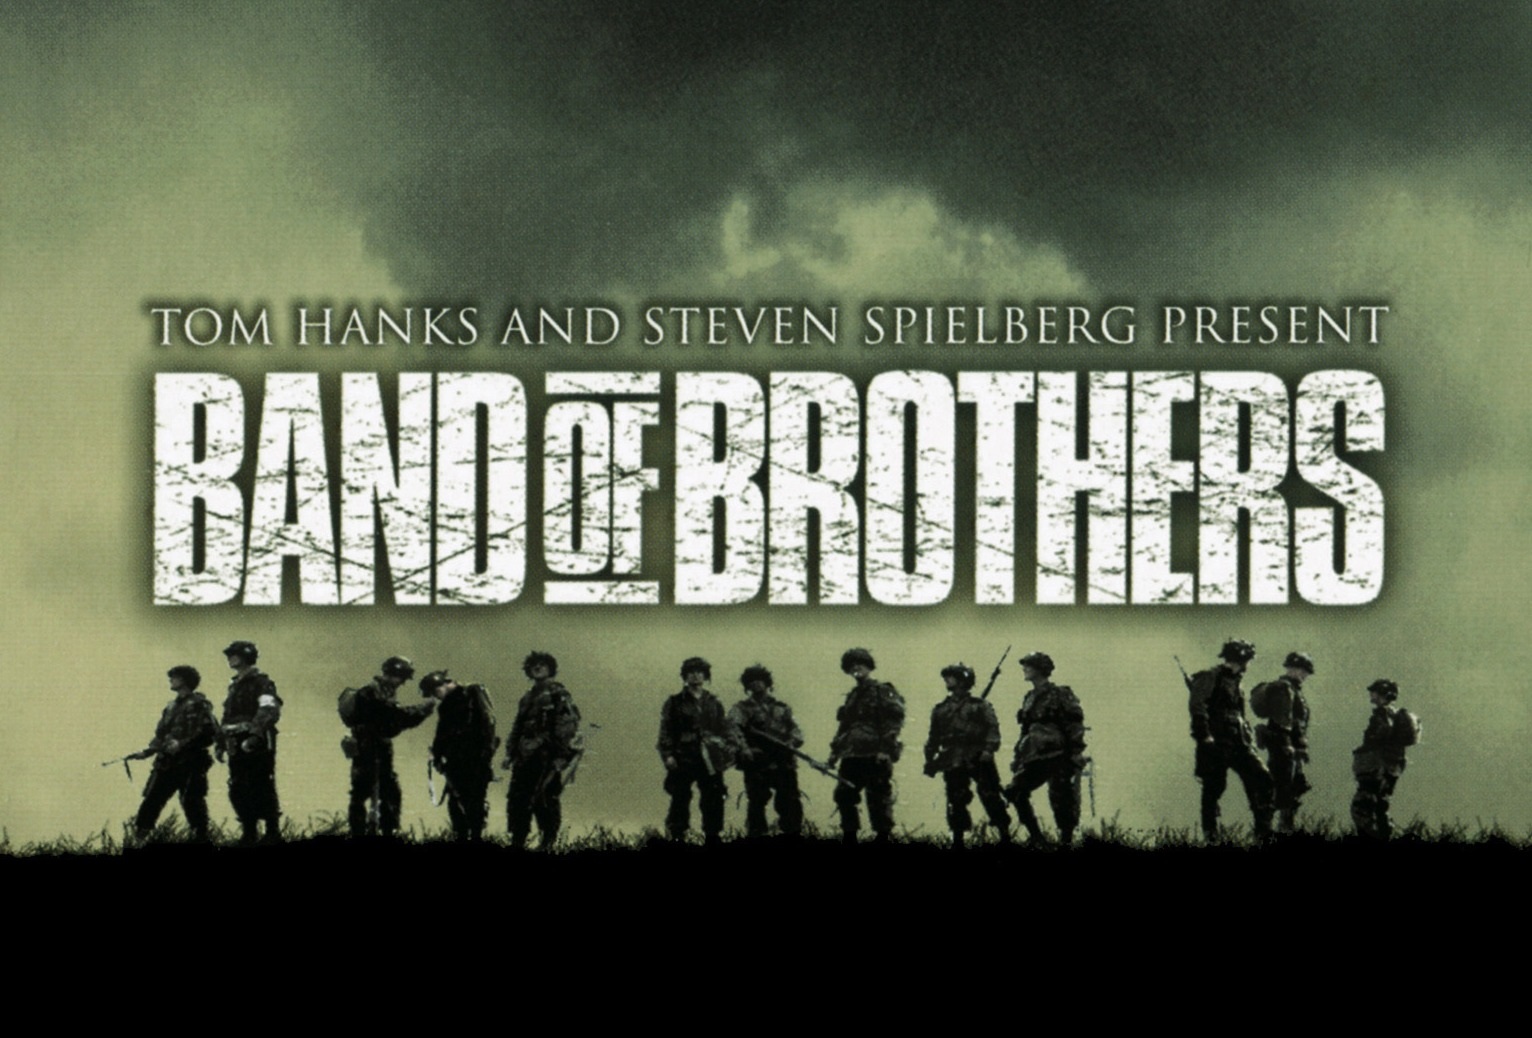 banda de hermanos fondo de pantalla,fuente,texto,película,equipo,soldado